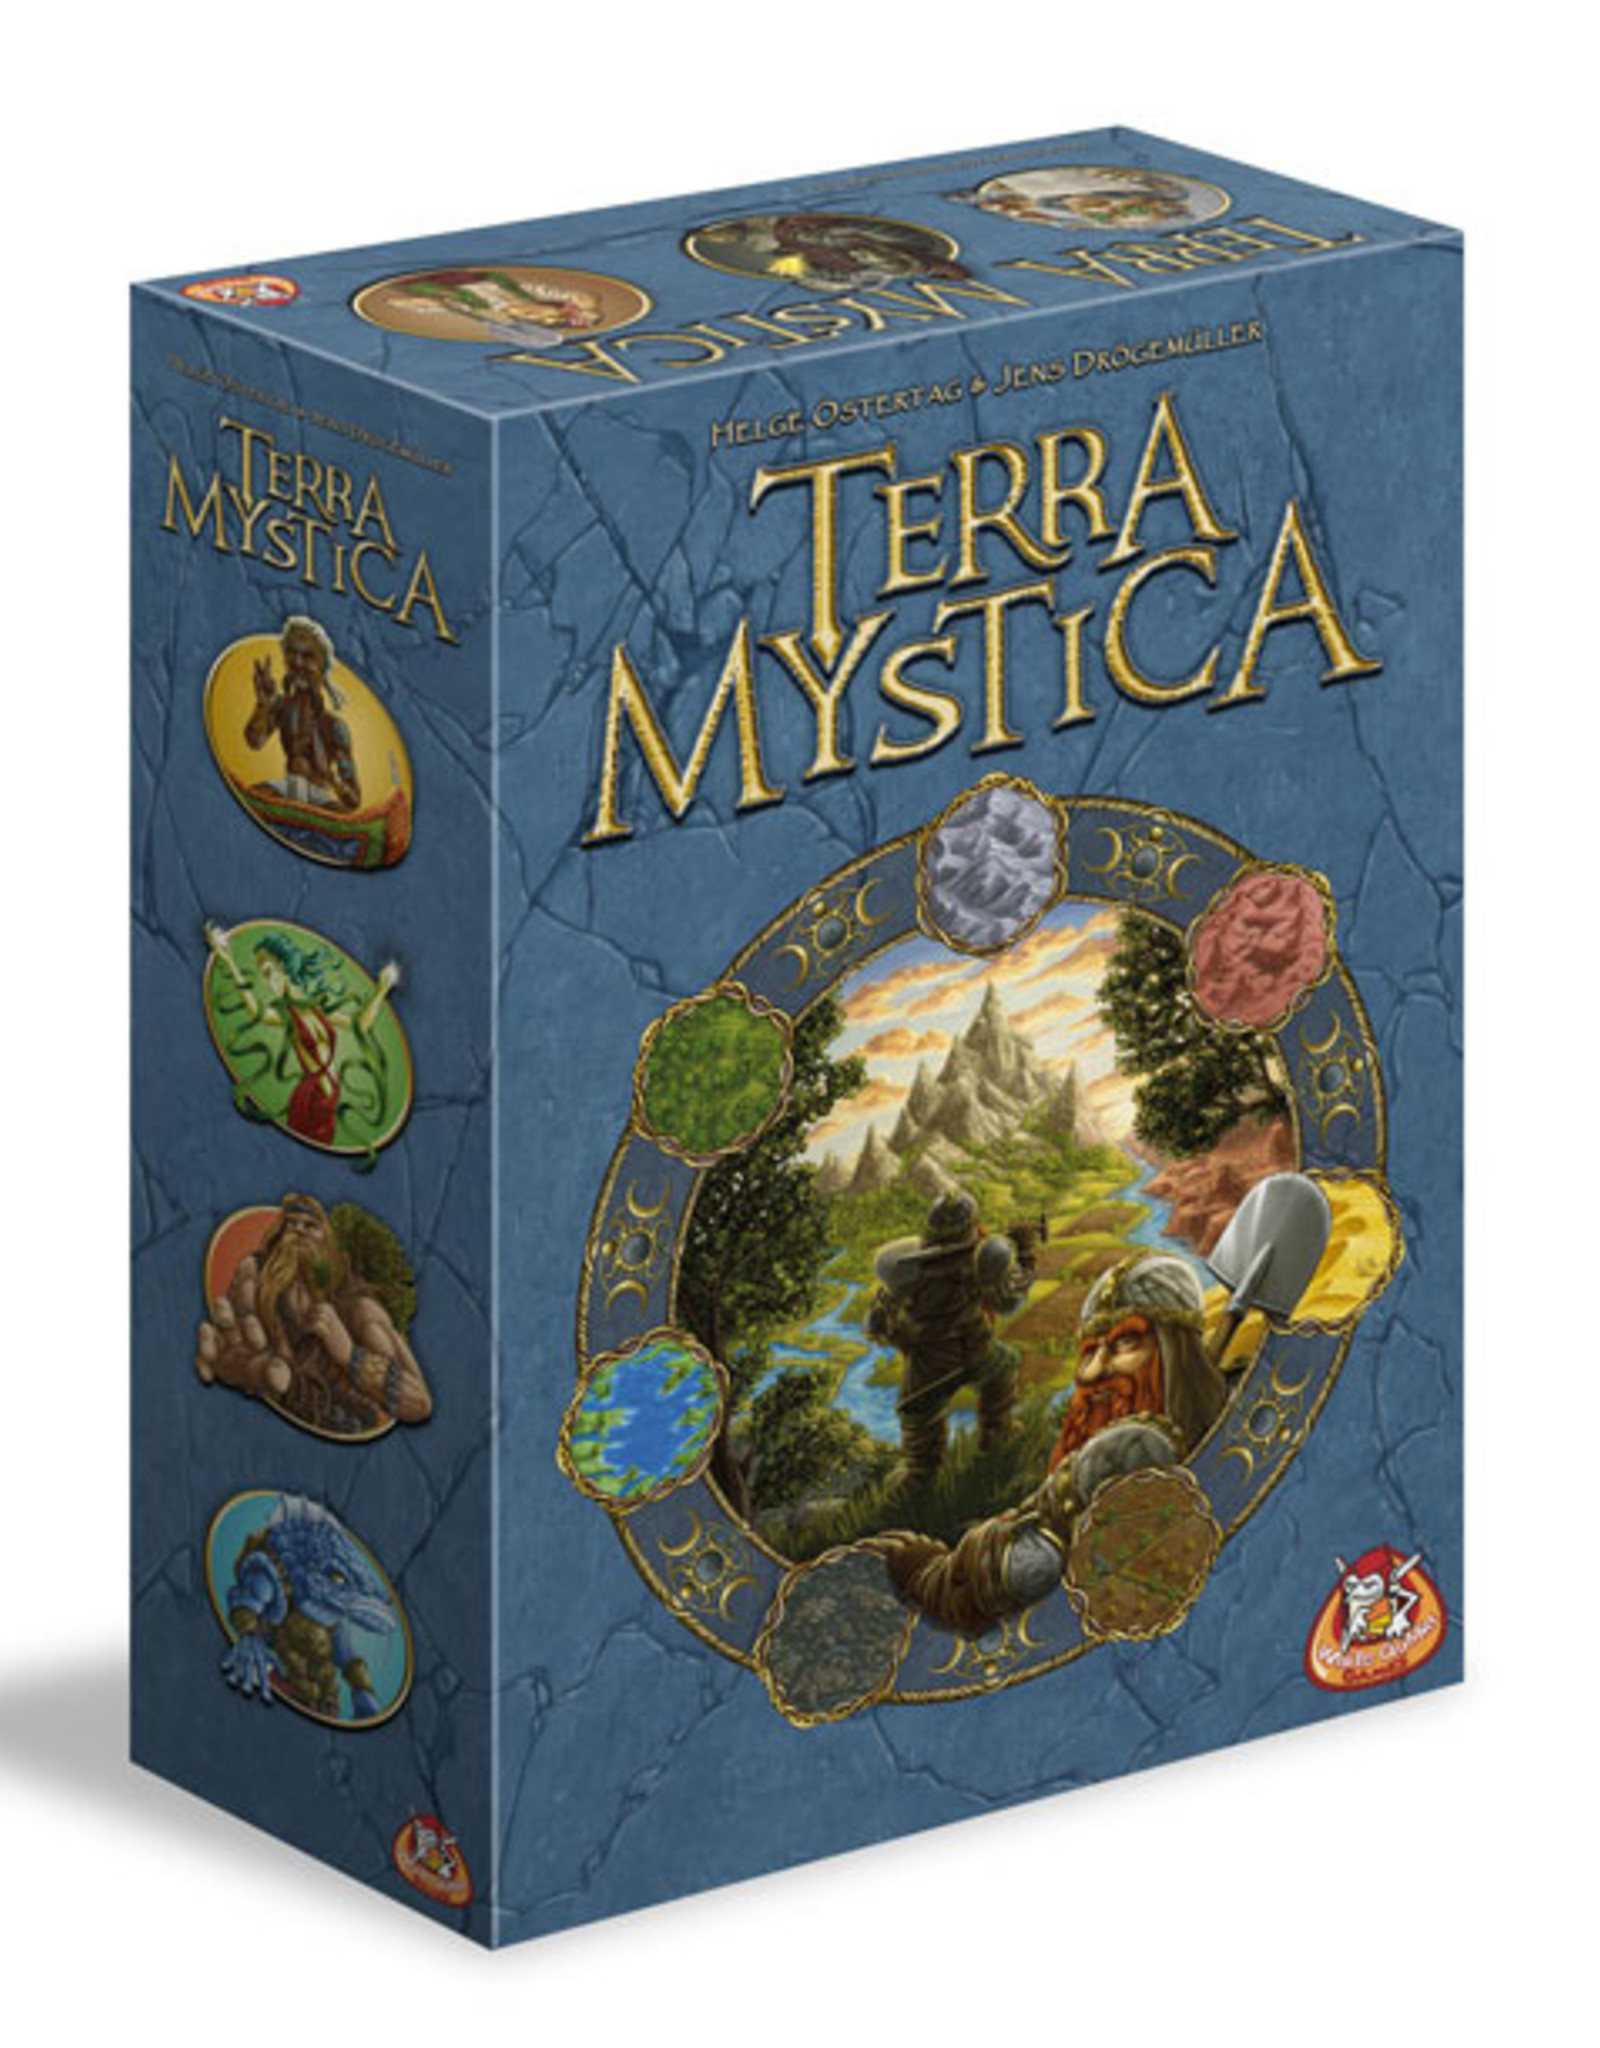 ترا میستیکا یا سرزمین اسرار آمیز (Terra Mystica)